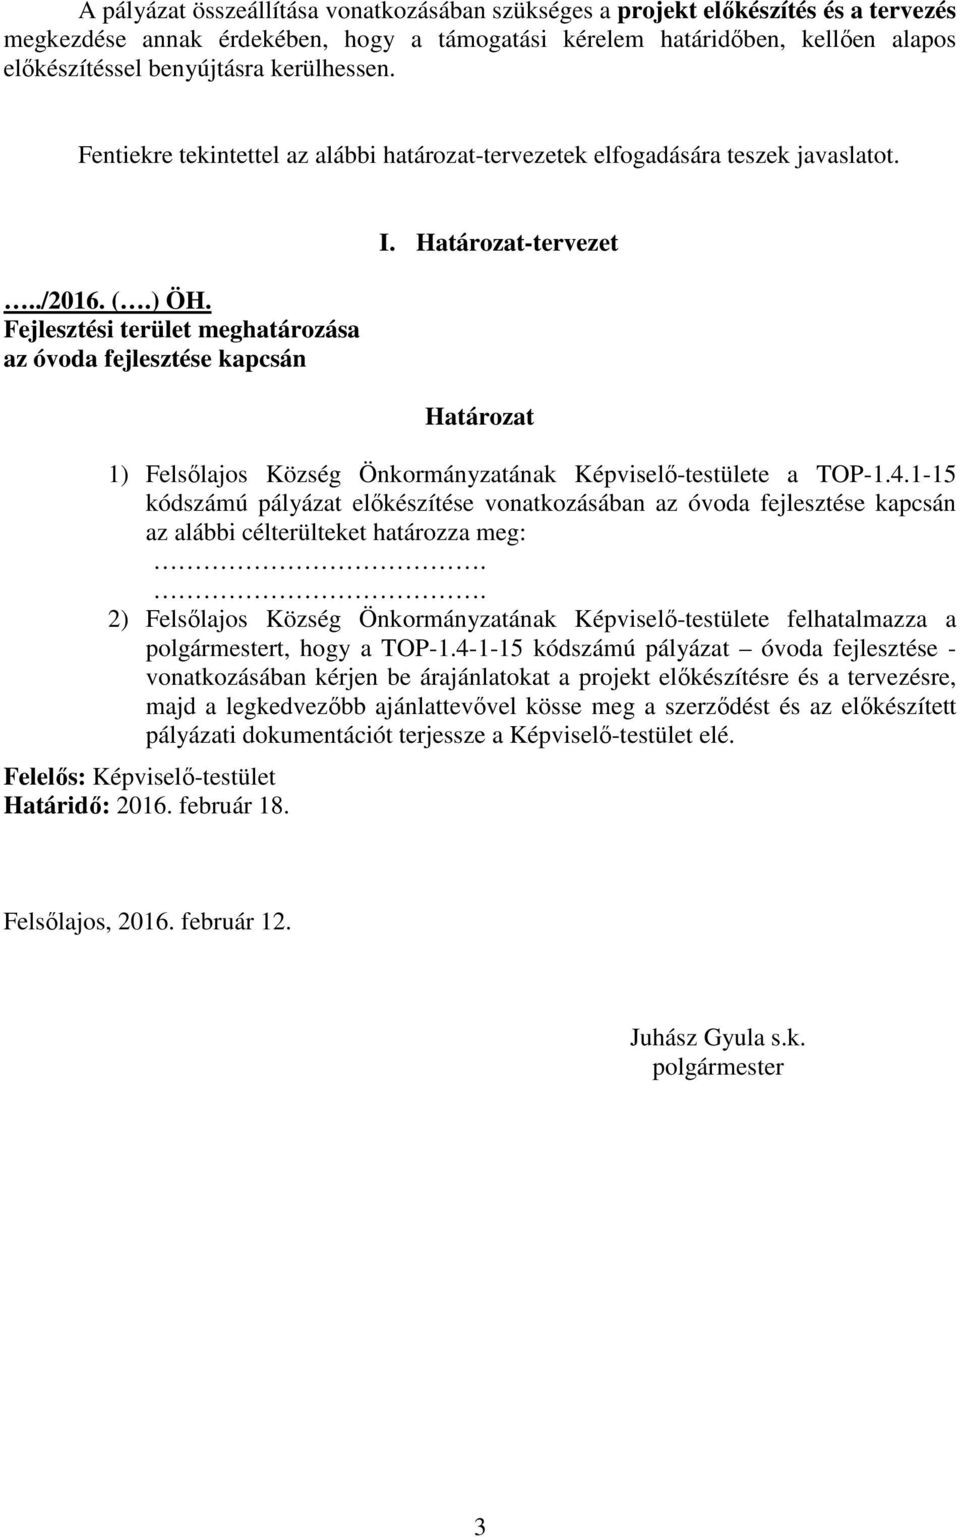 Határozat-tervezet Határozat 1) Felsılajos Község Önkormányzatának Képviselı-testülete a TOP-1.4.